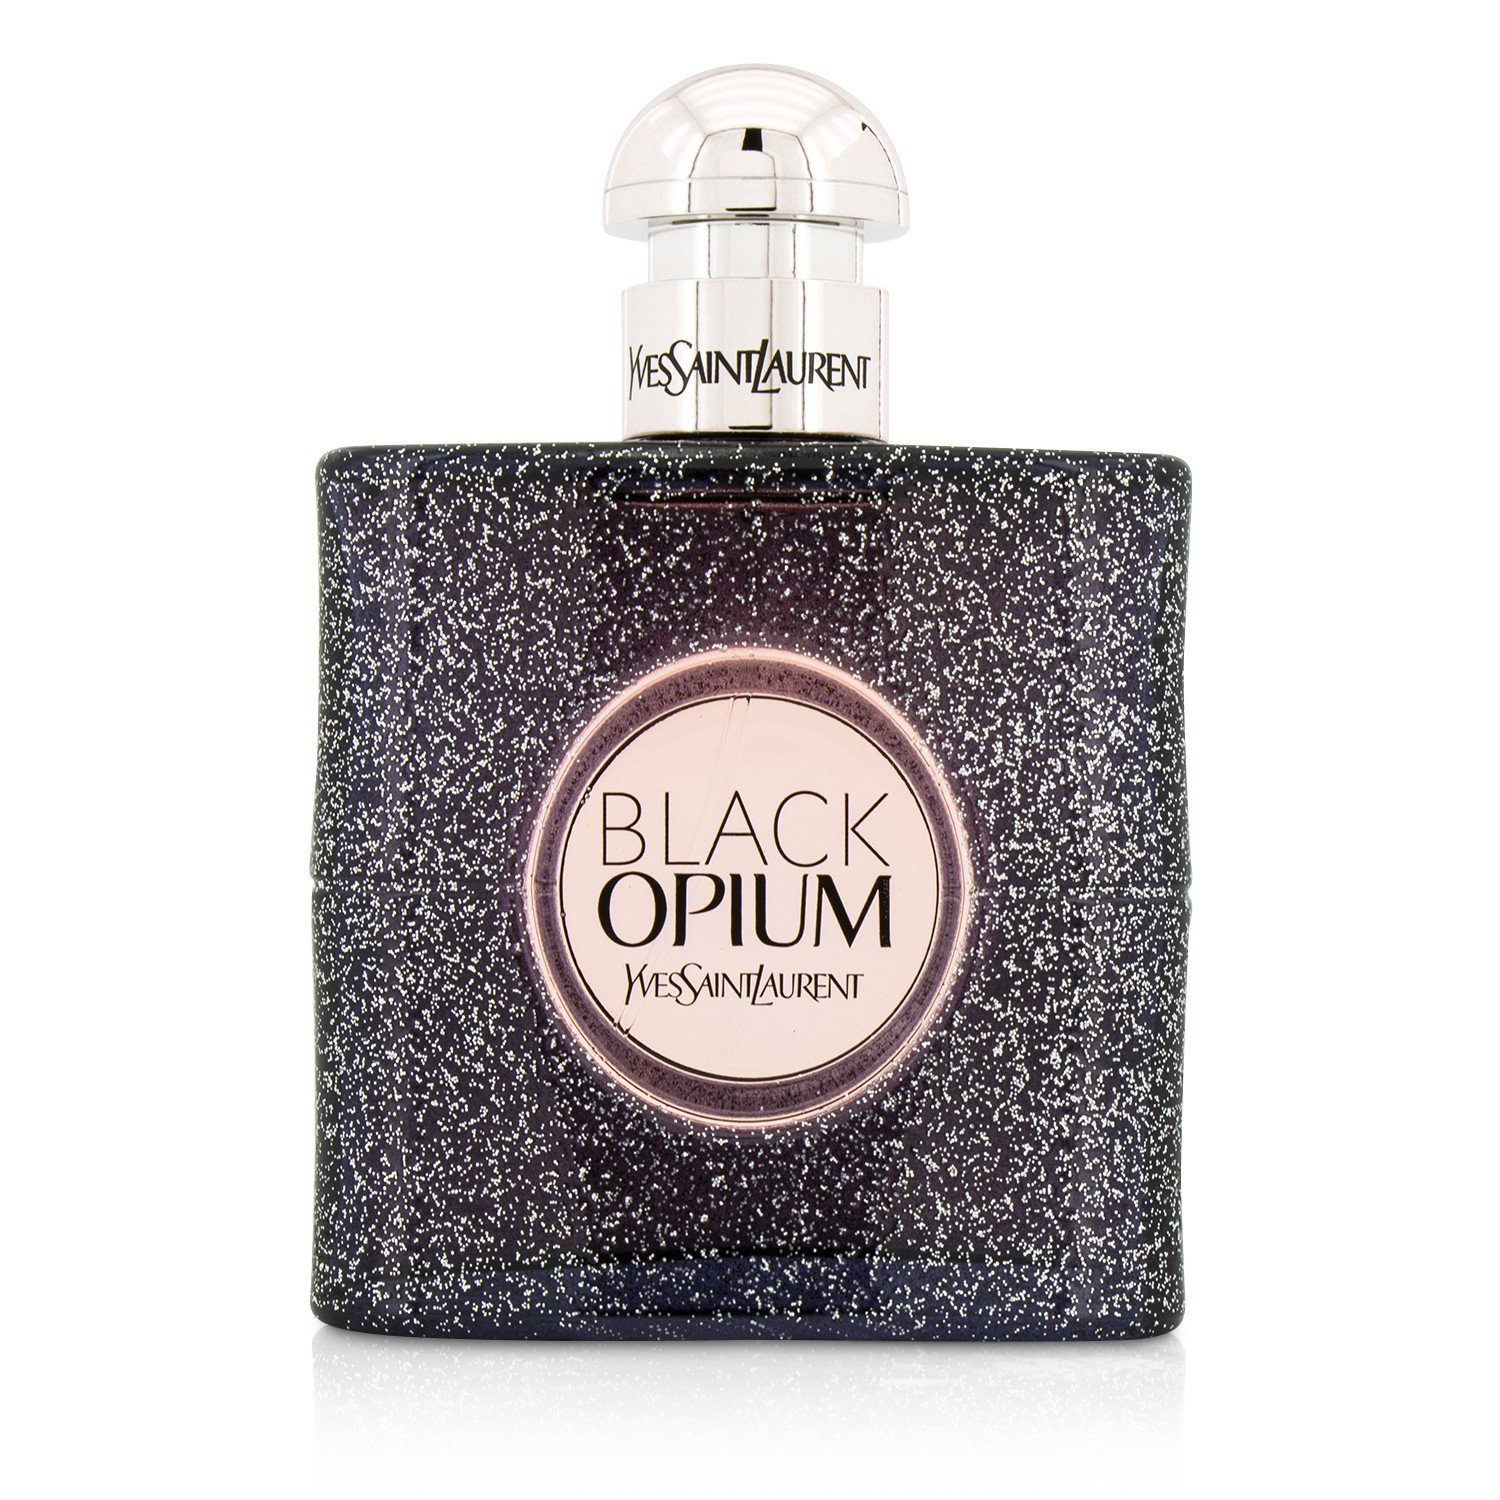 Yves Saint Laurent Eau De Parfum Spray for Women, Black Opium, 3 FL OZ